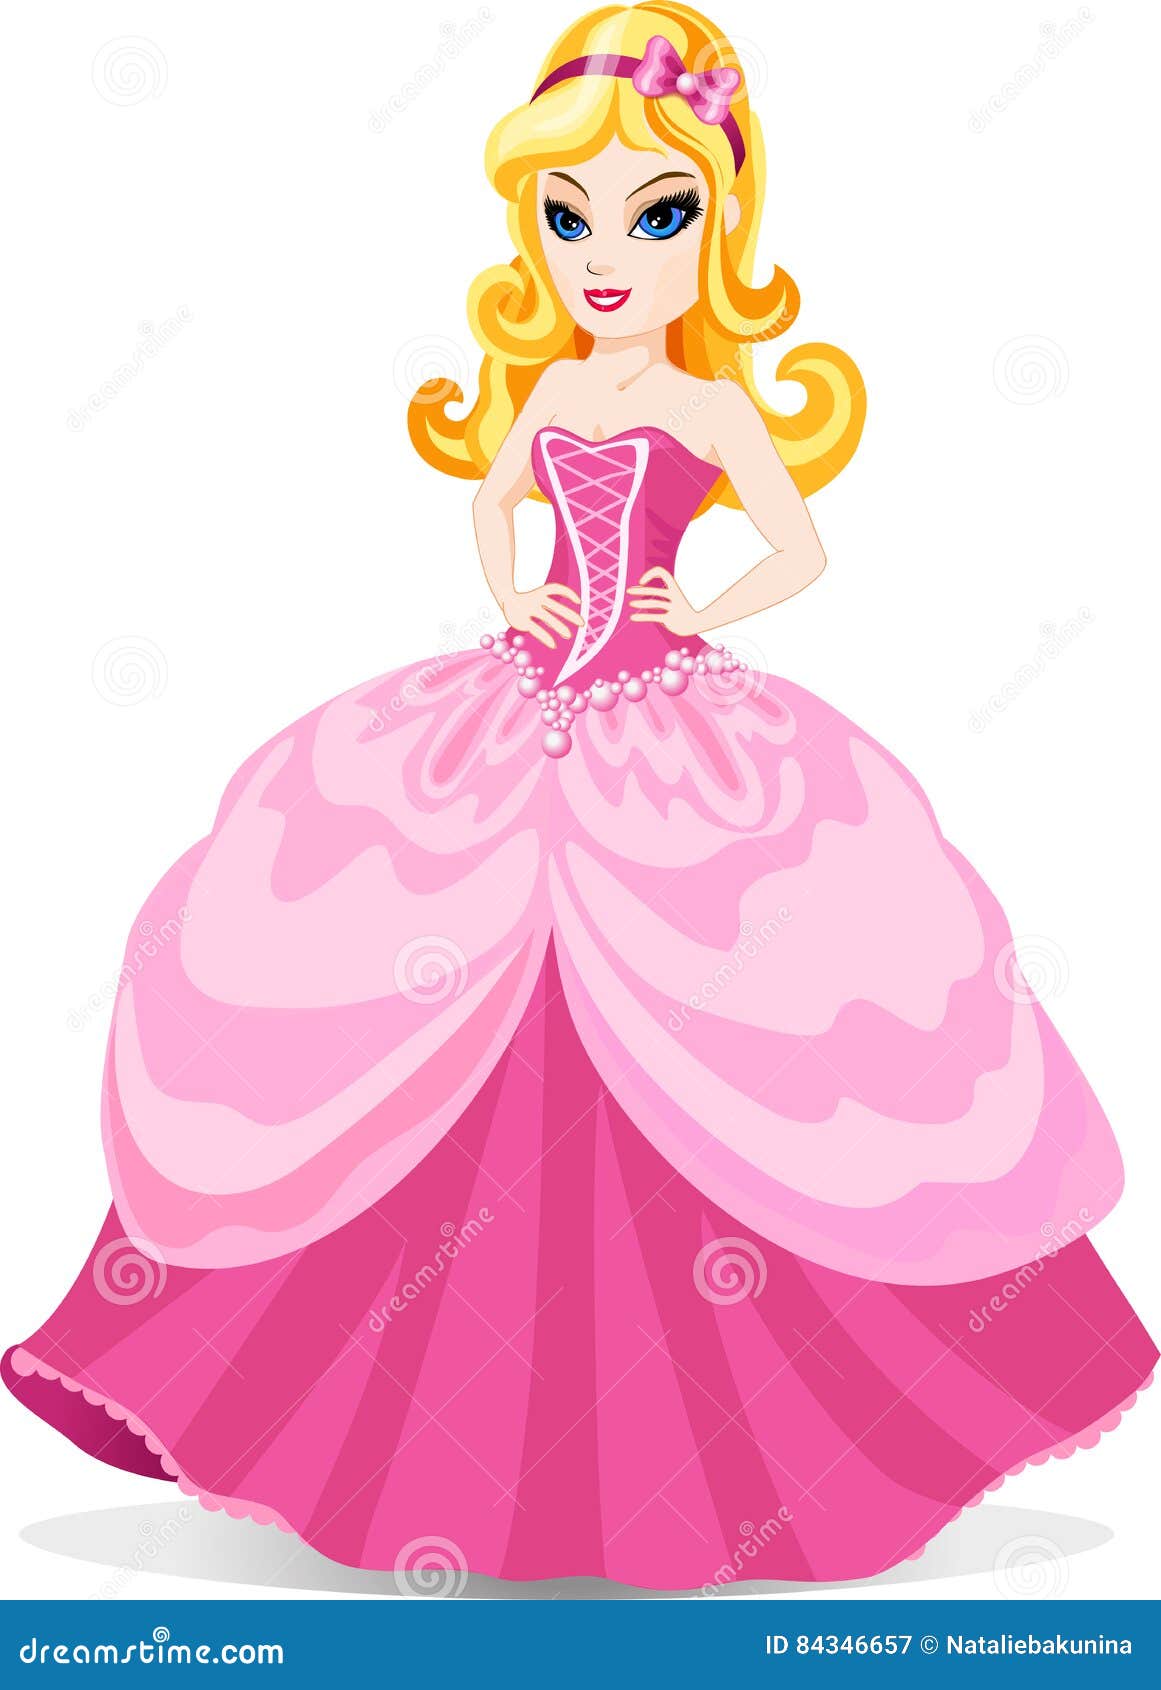 Recitar Inocente Visible Princesa en vestido rosado ilustración del vector. Ilustración de imagen -  84346657